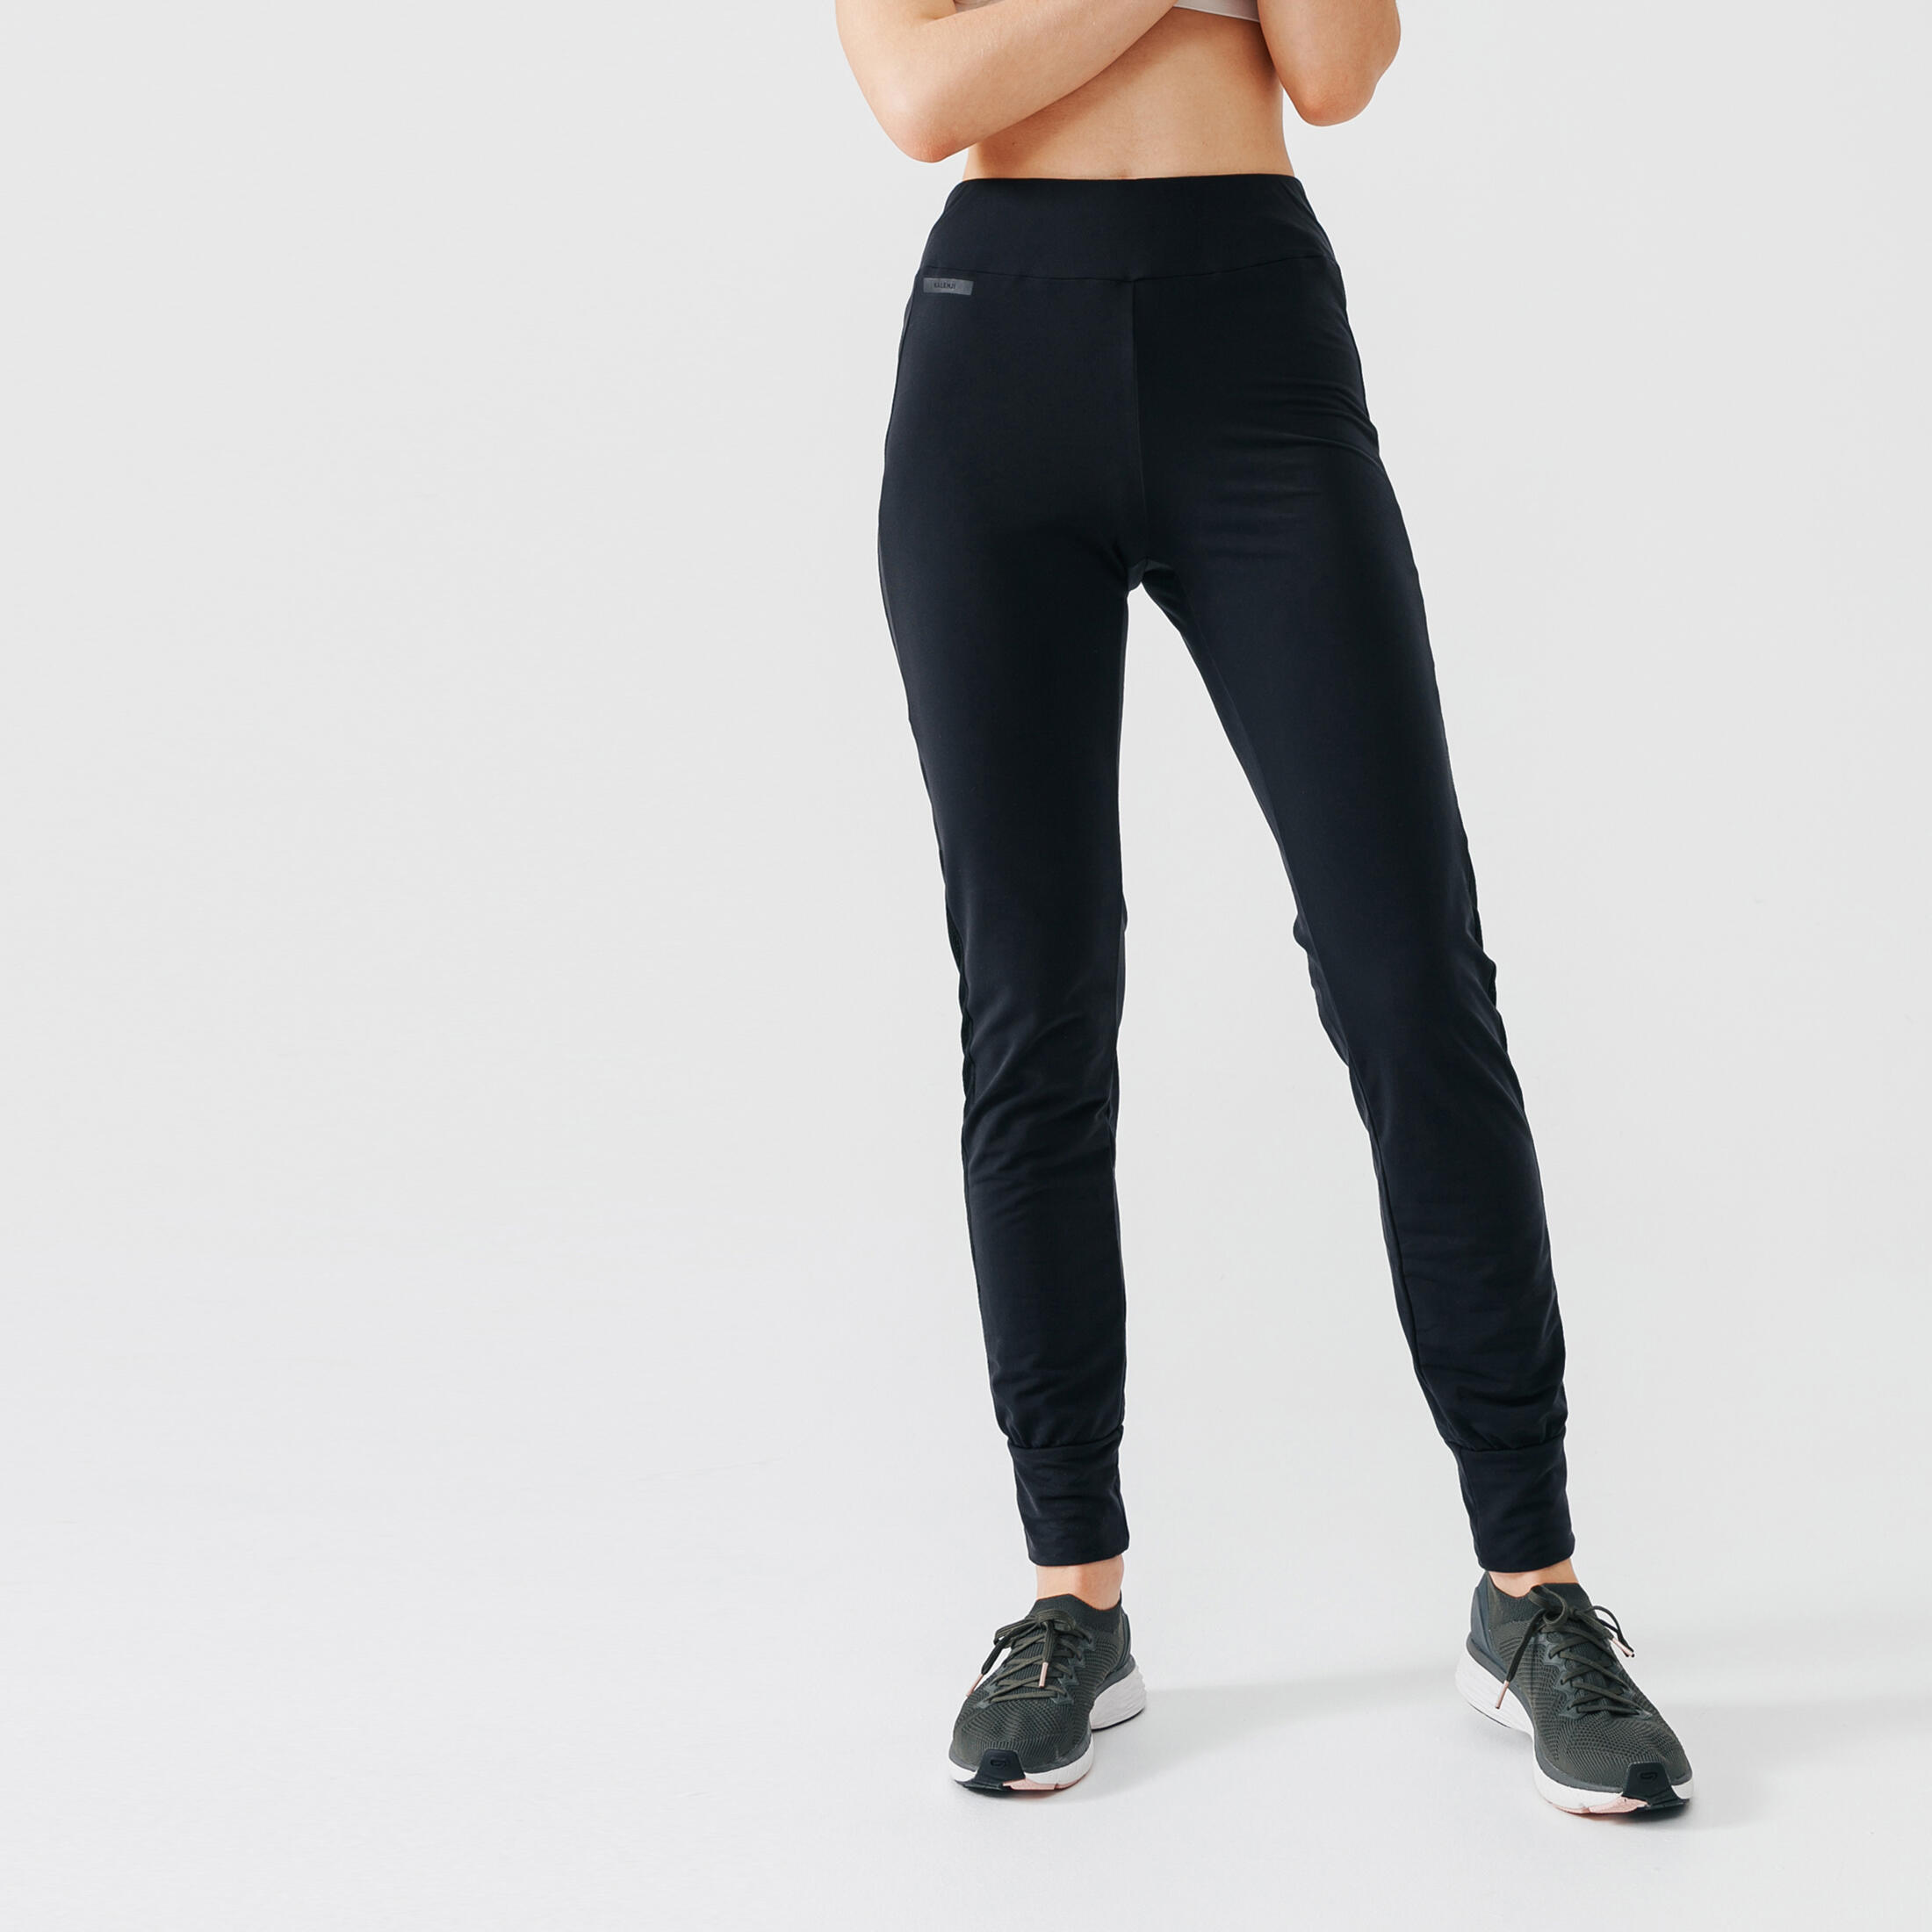 EVELIFE Pantalon Chandal Mujer Jogger Elásticos Pantalones de Deporte con Bolsillo Pantalón para Deportivo Yoga Fitness 